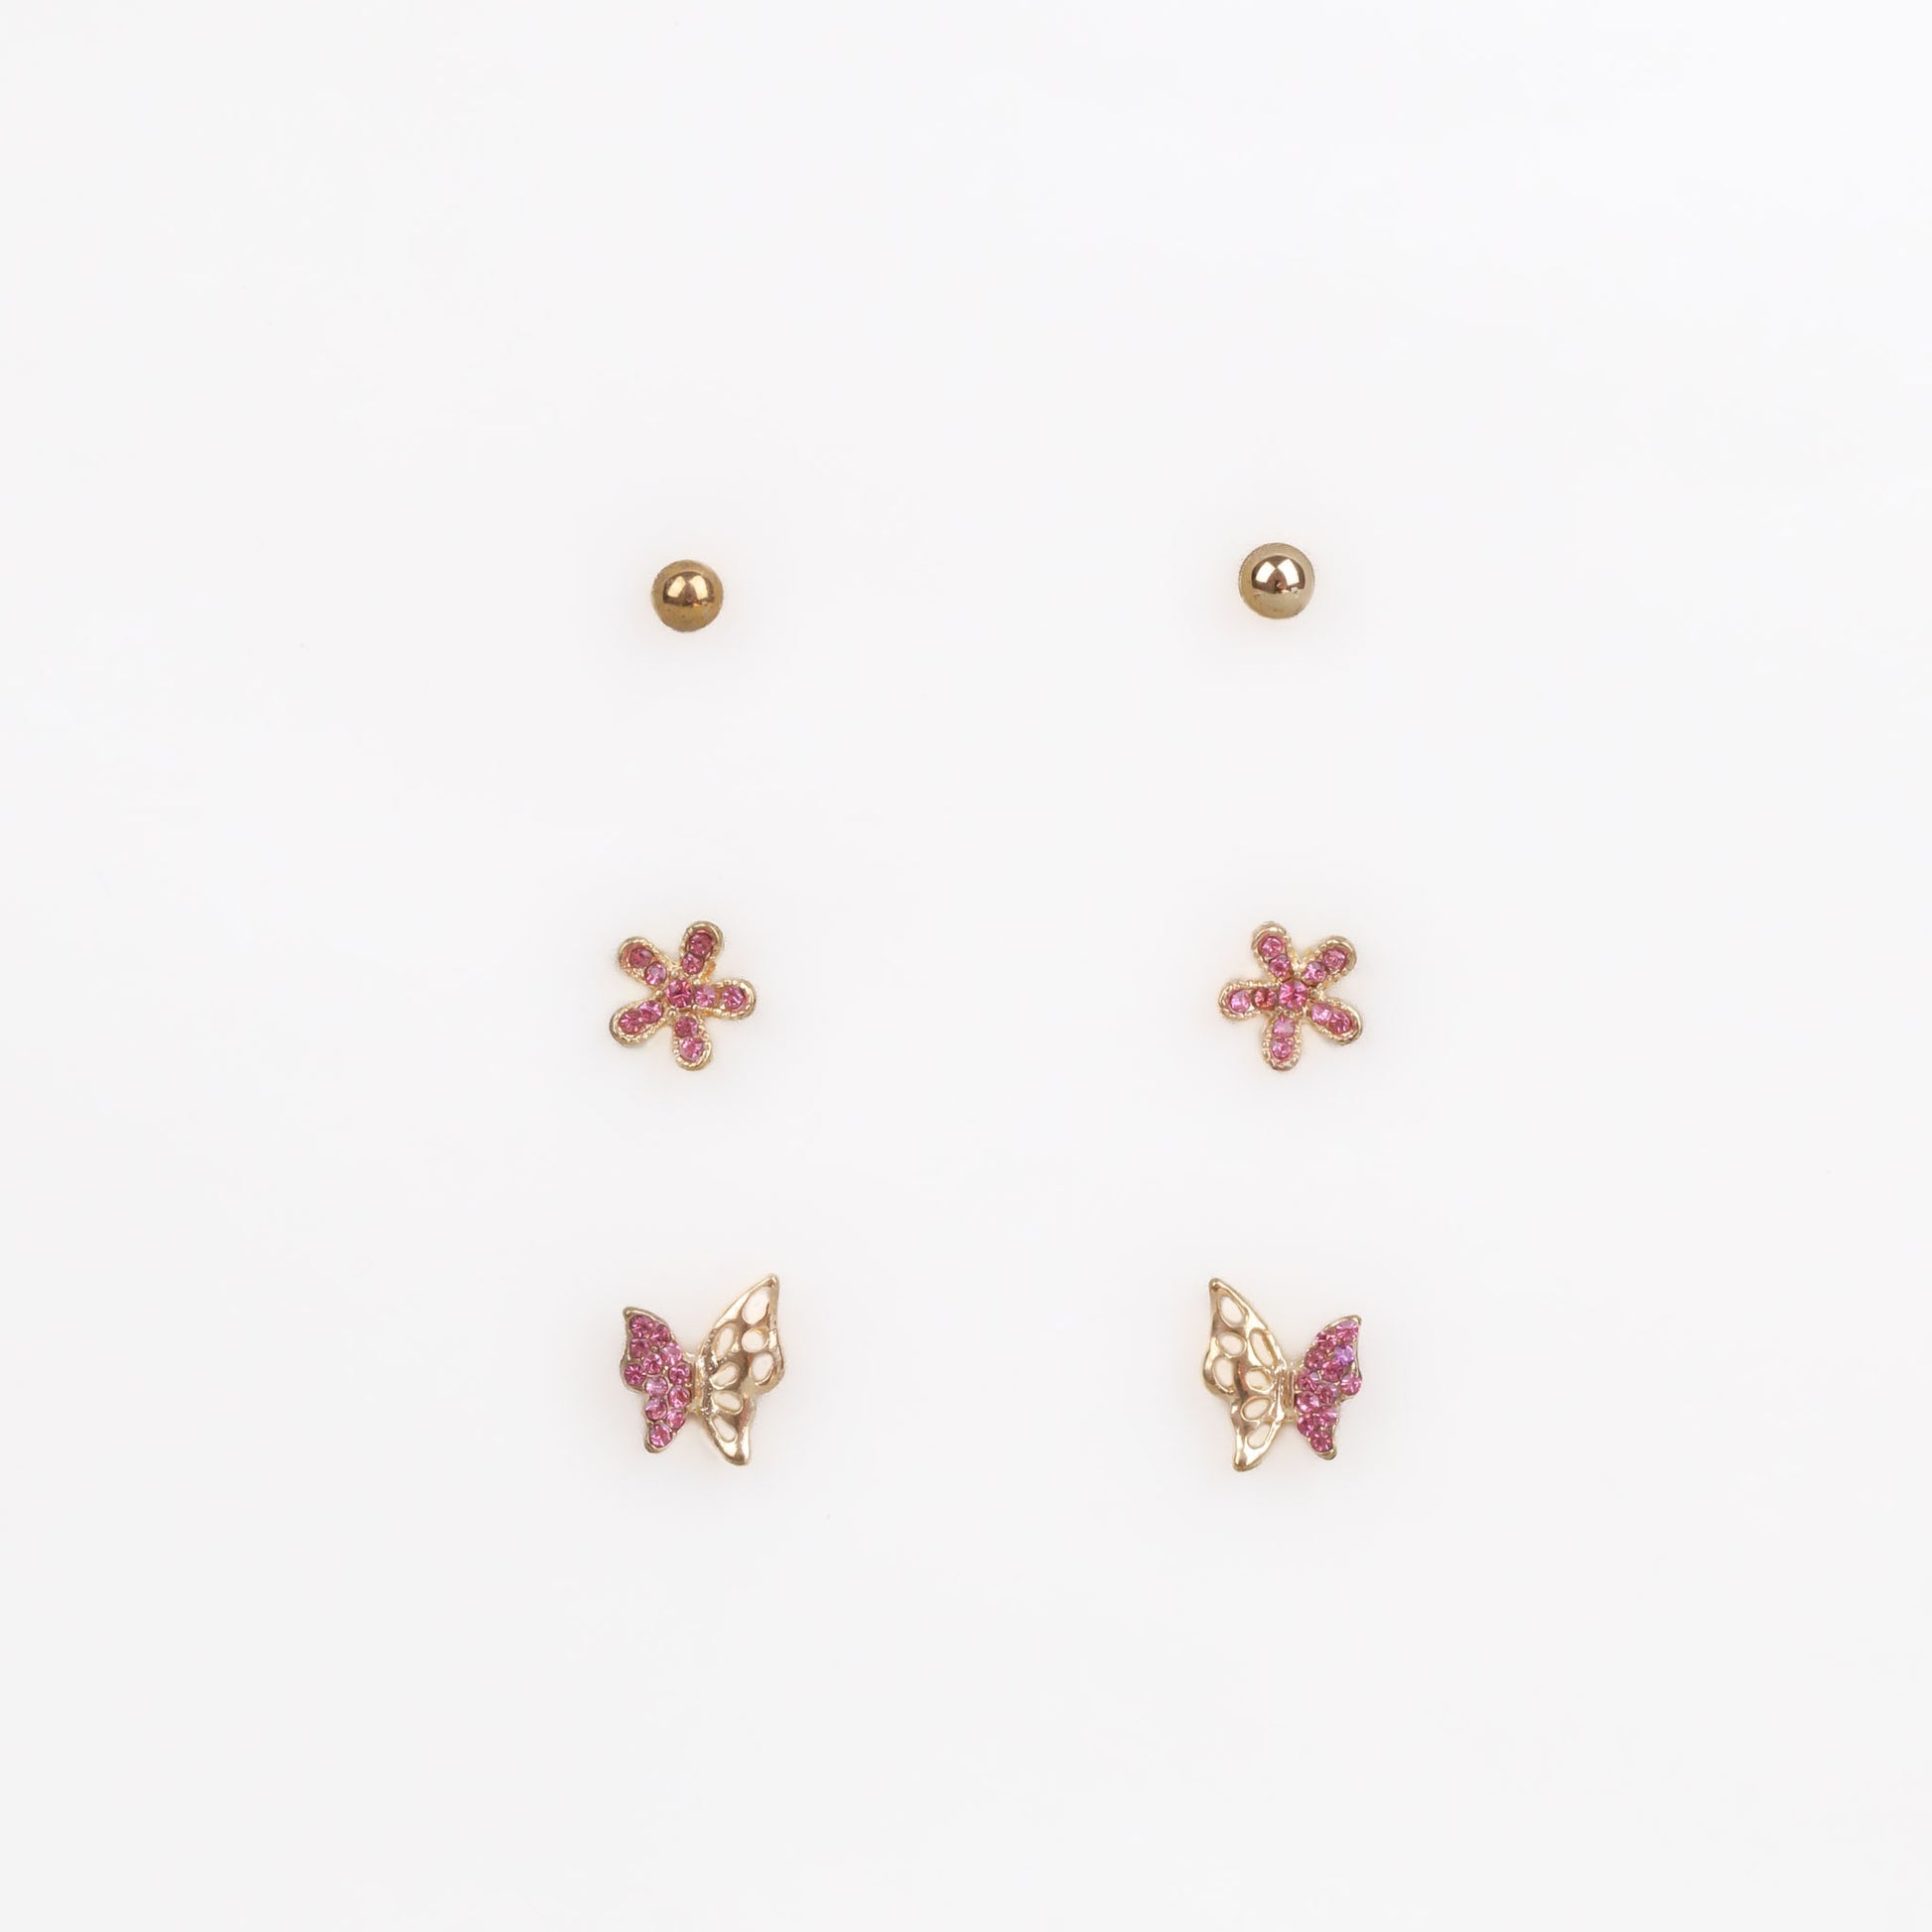 Cercei mici aurii cu fluture, floare și ștrasuri, set 3 perechi - Roz